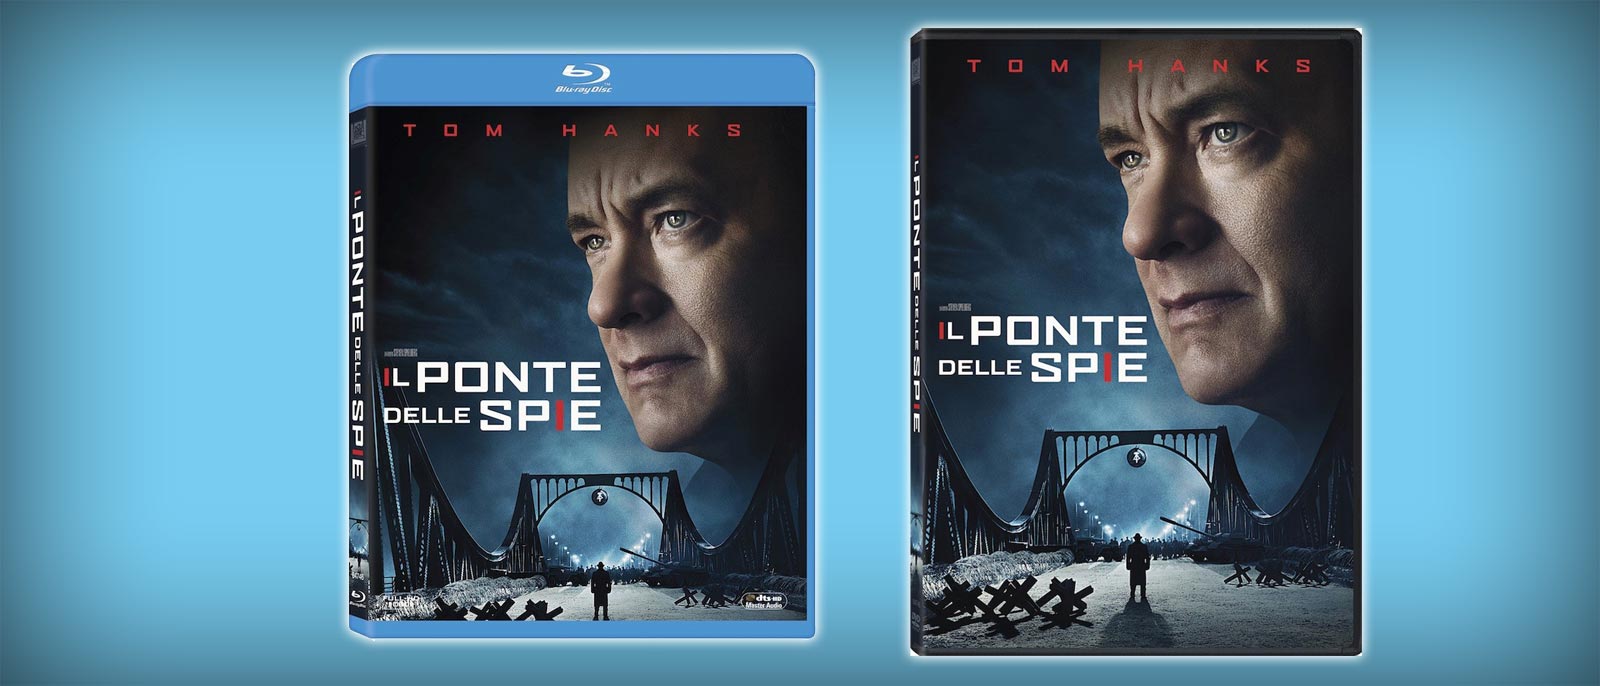 Il Ponte delle spie in DVD, Blu-ray